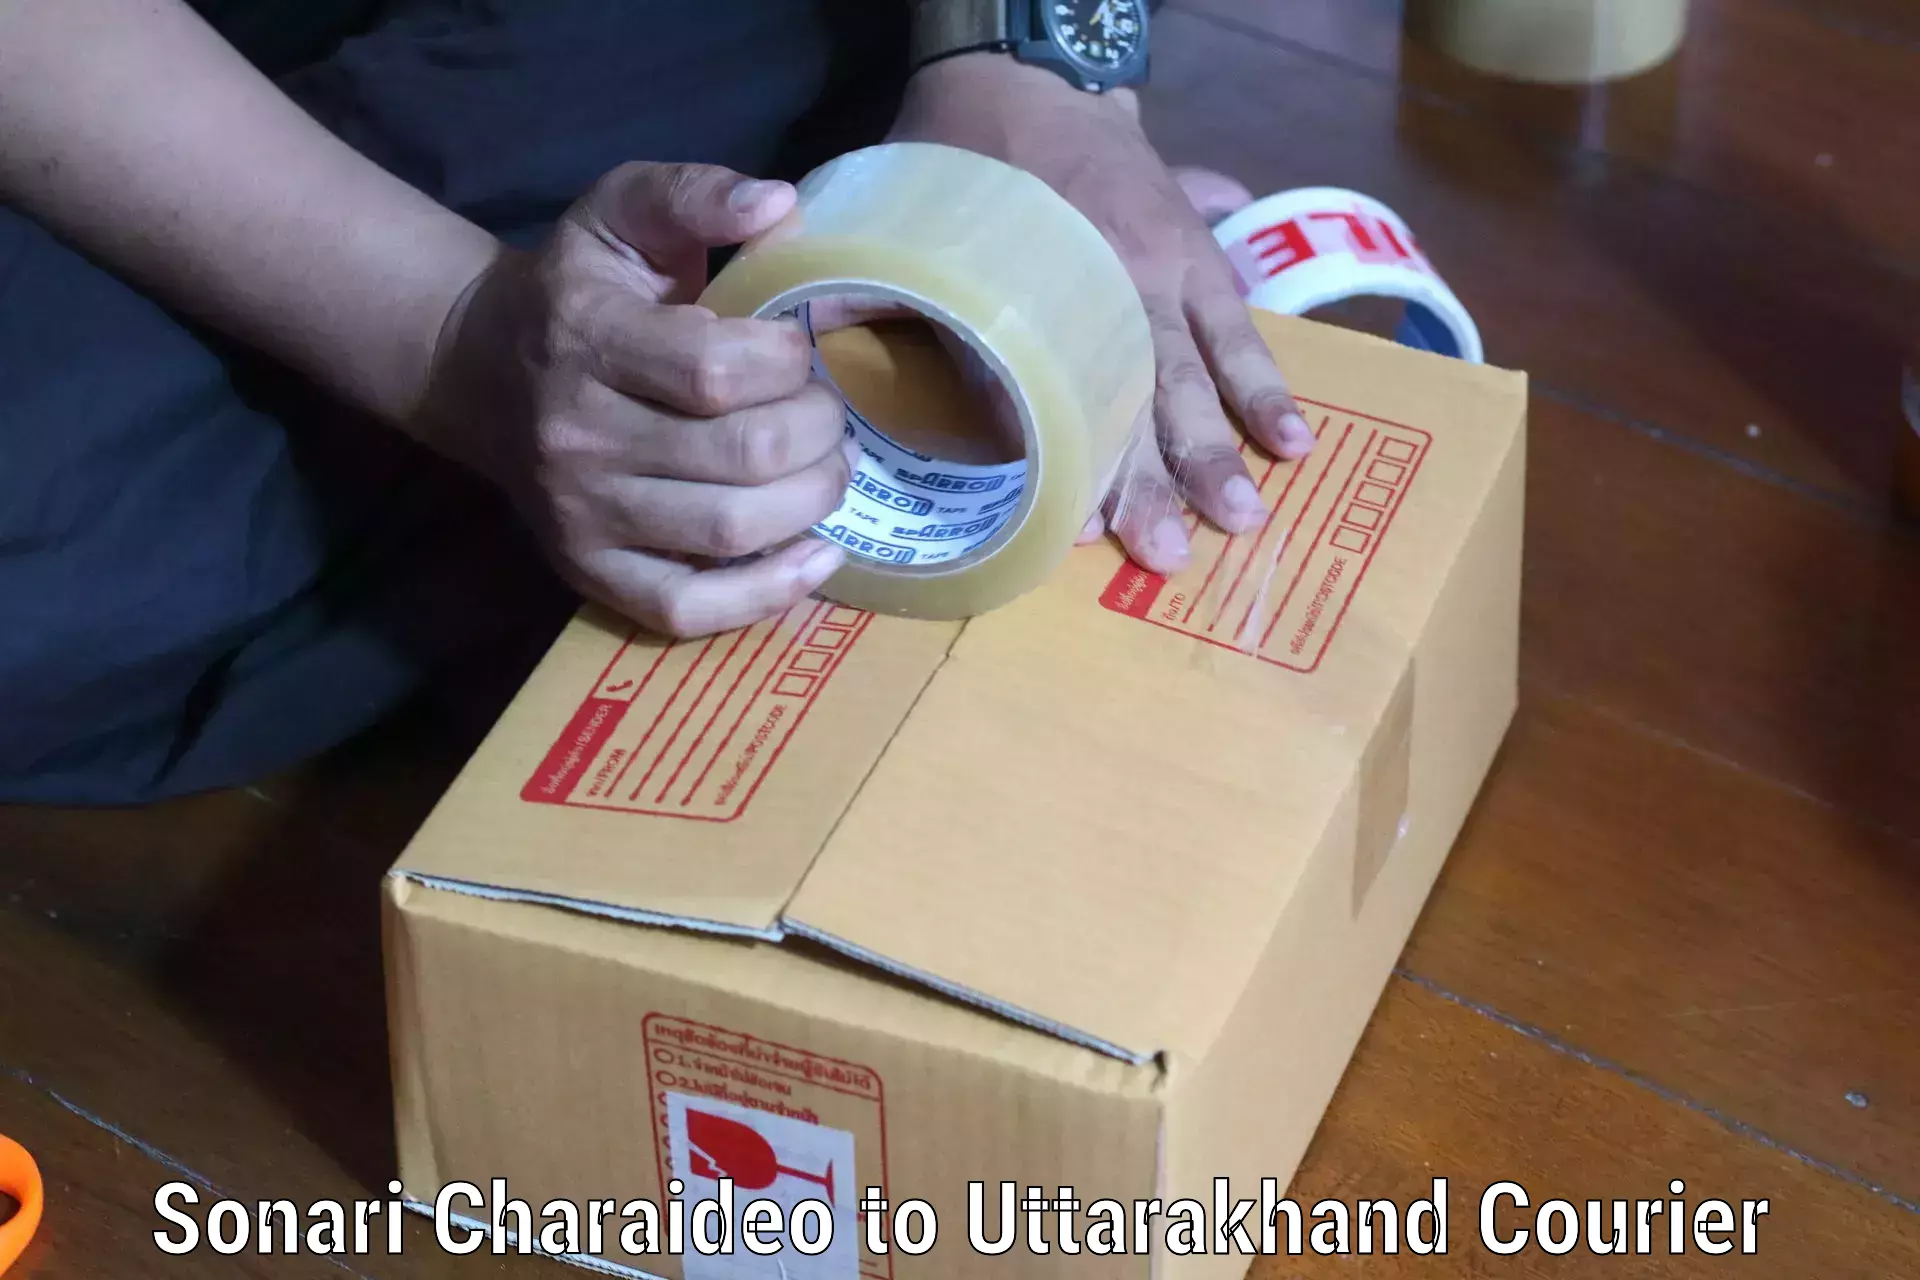 International courier networks Sonari Charaideo to Uttarakhand